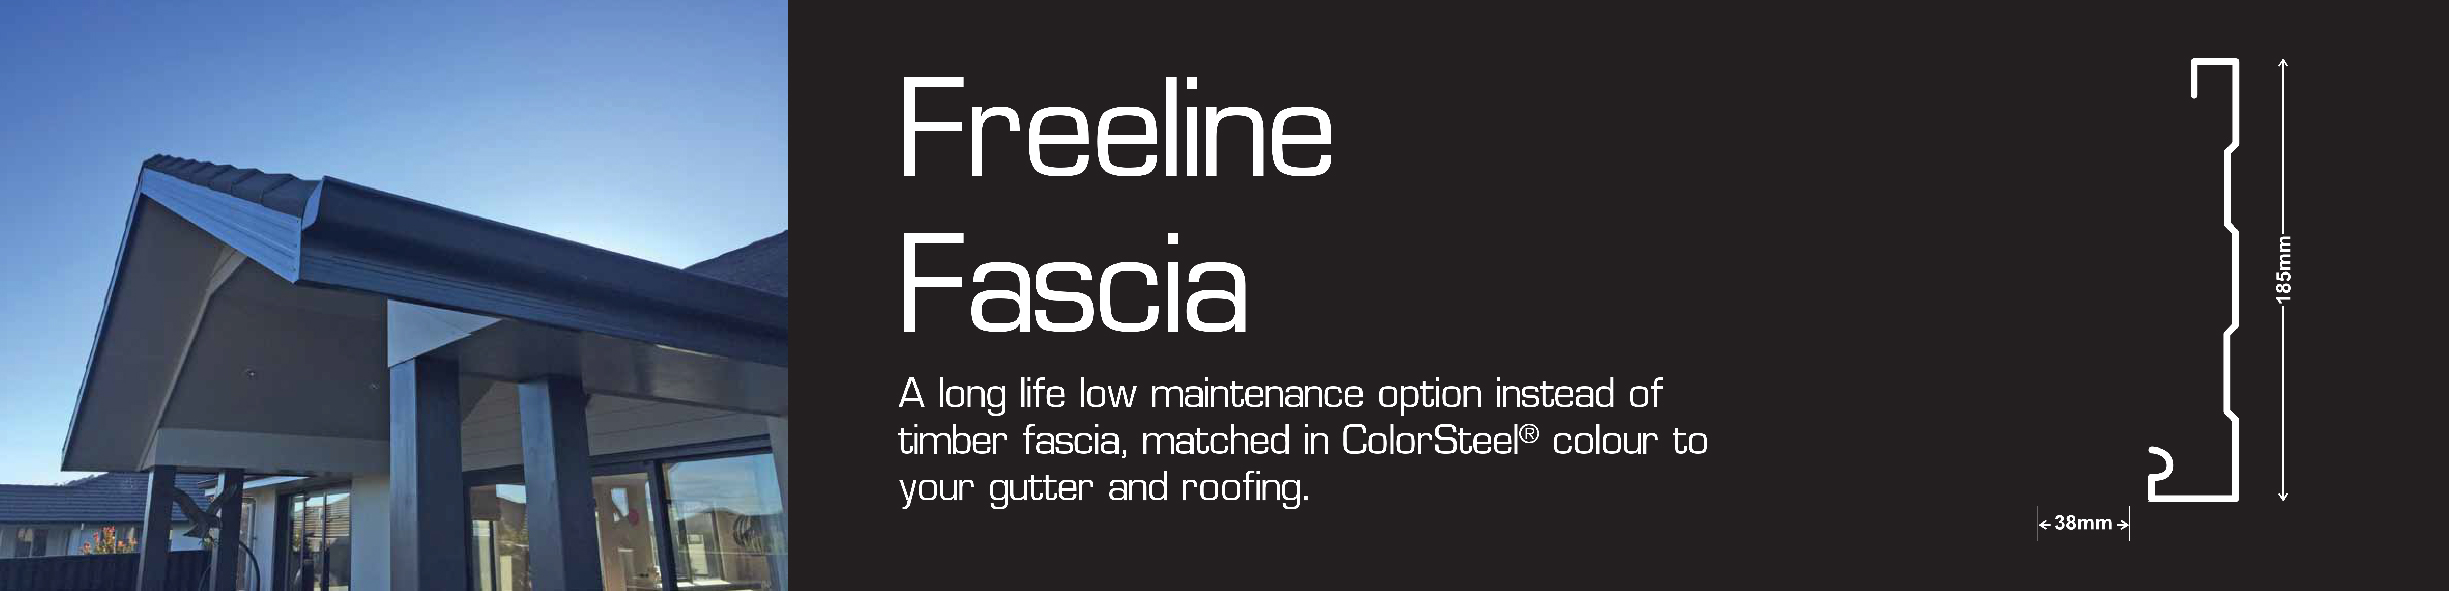 Freeline-Fascia.jpg